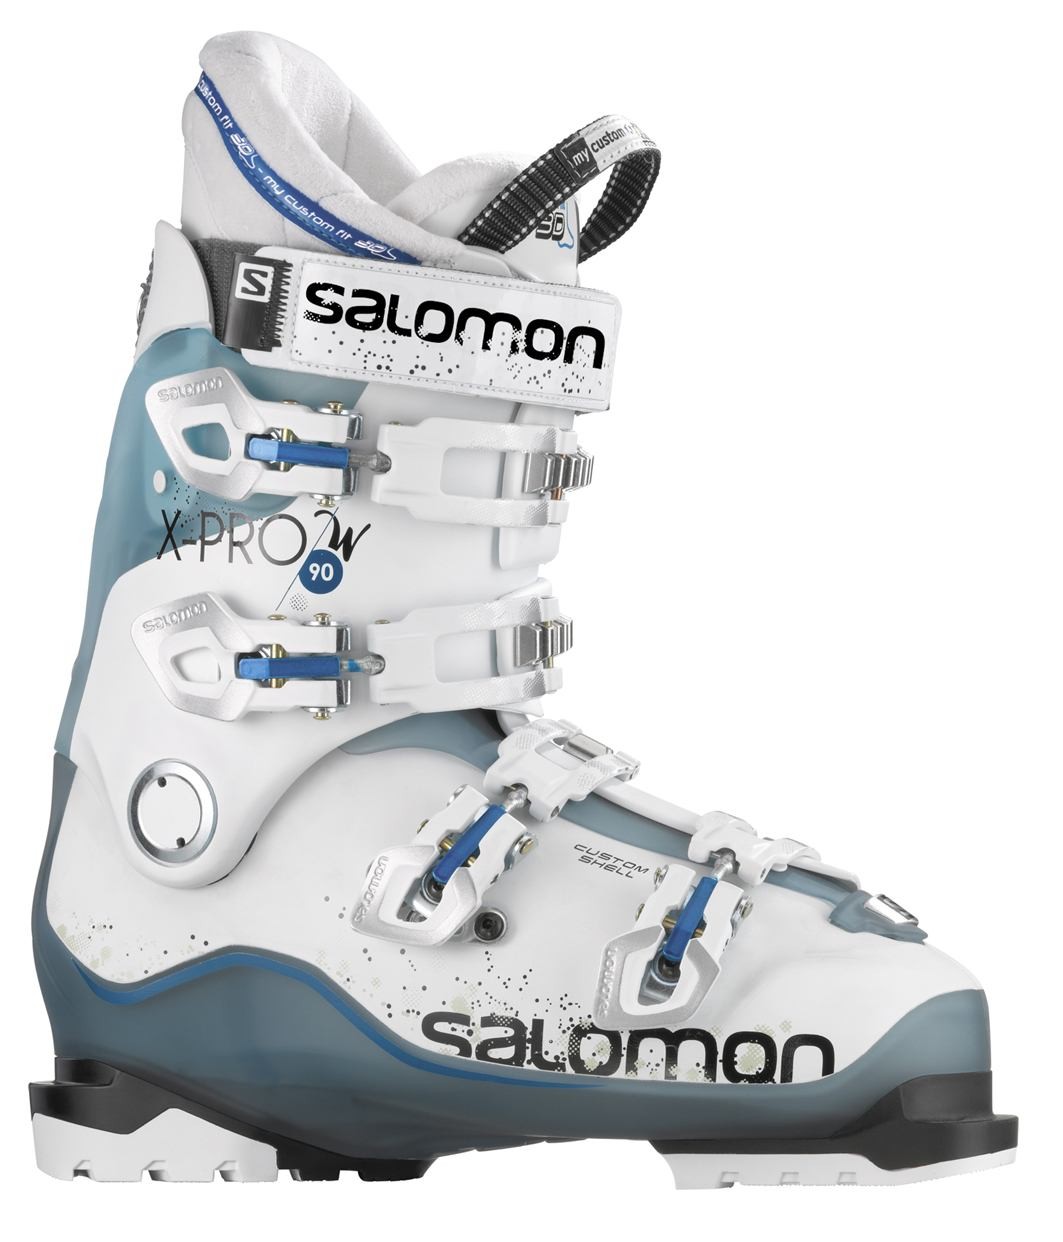 Salomon X Pro 90 women's ski boot review - Snow Magazine